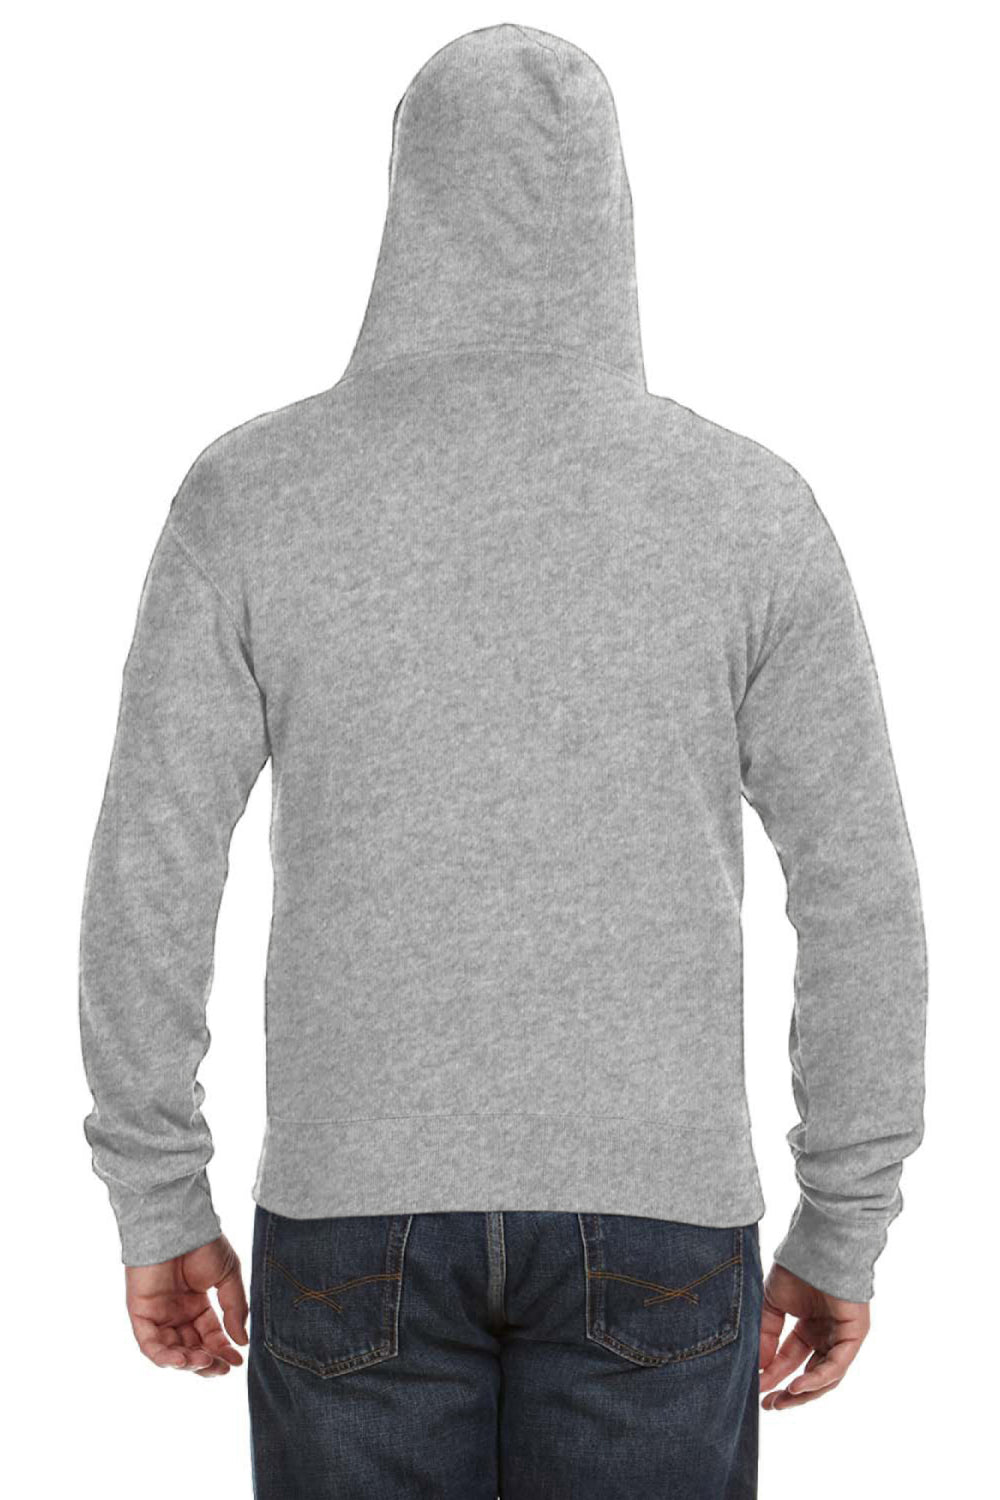 J America JA8872 Mens Fleece Full Zip Hooded Sweatshirt Hoodie Grey Back